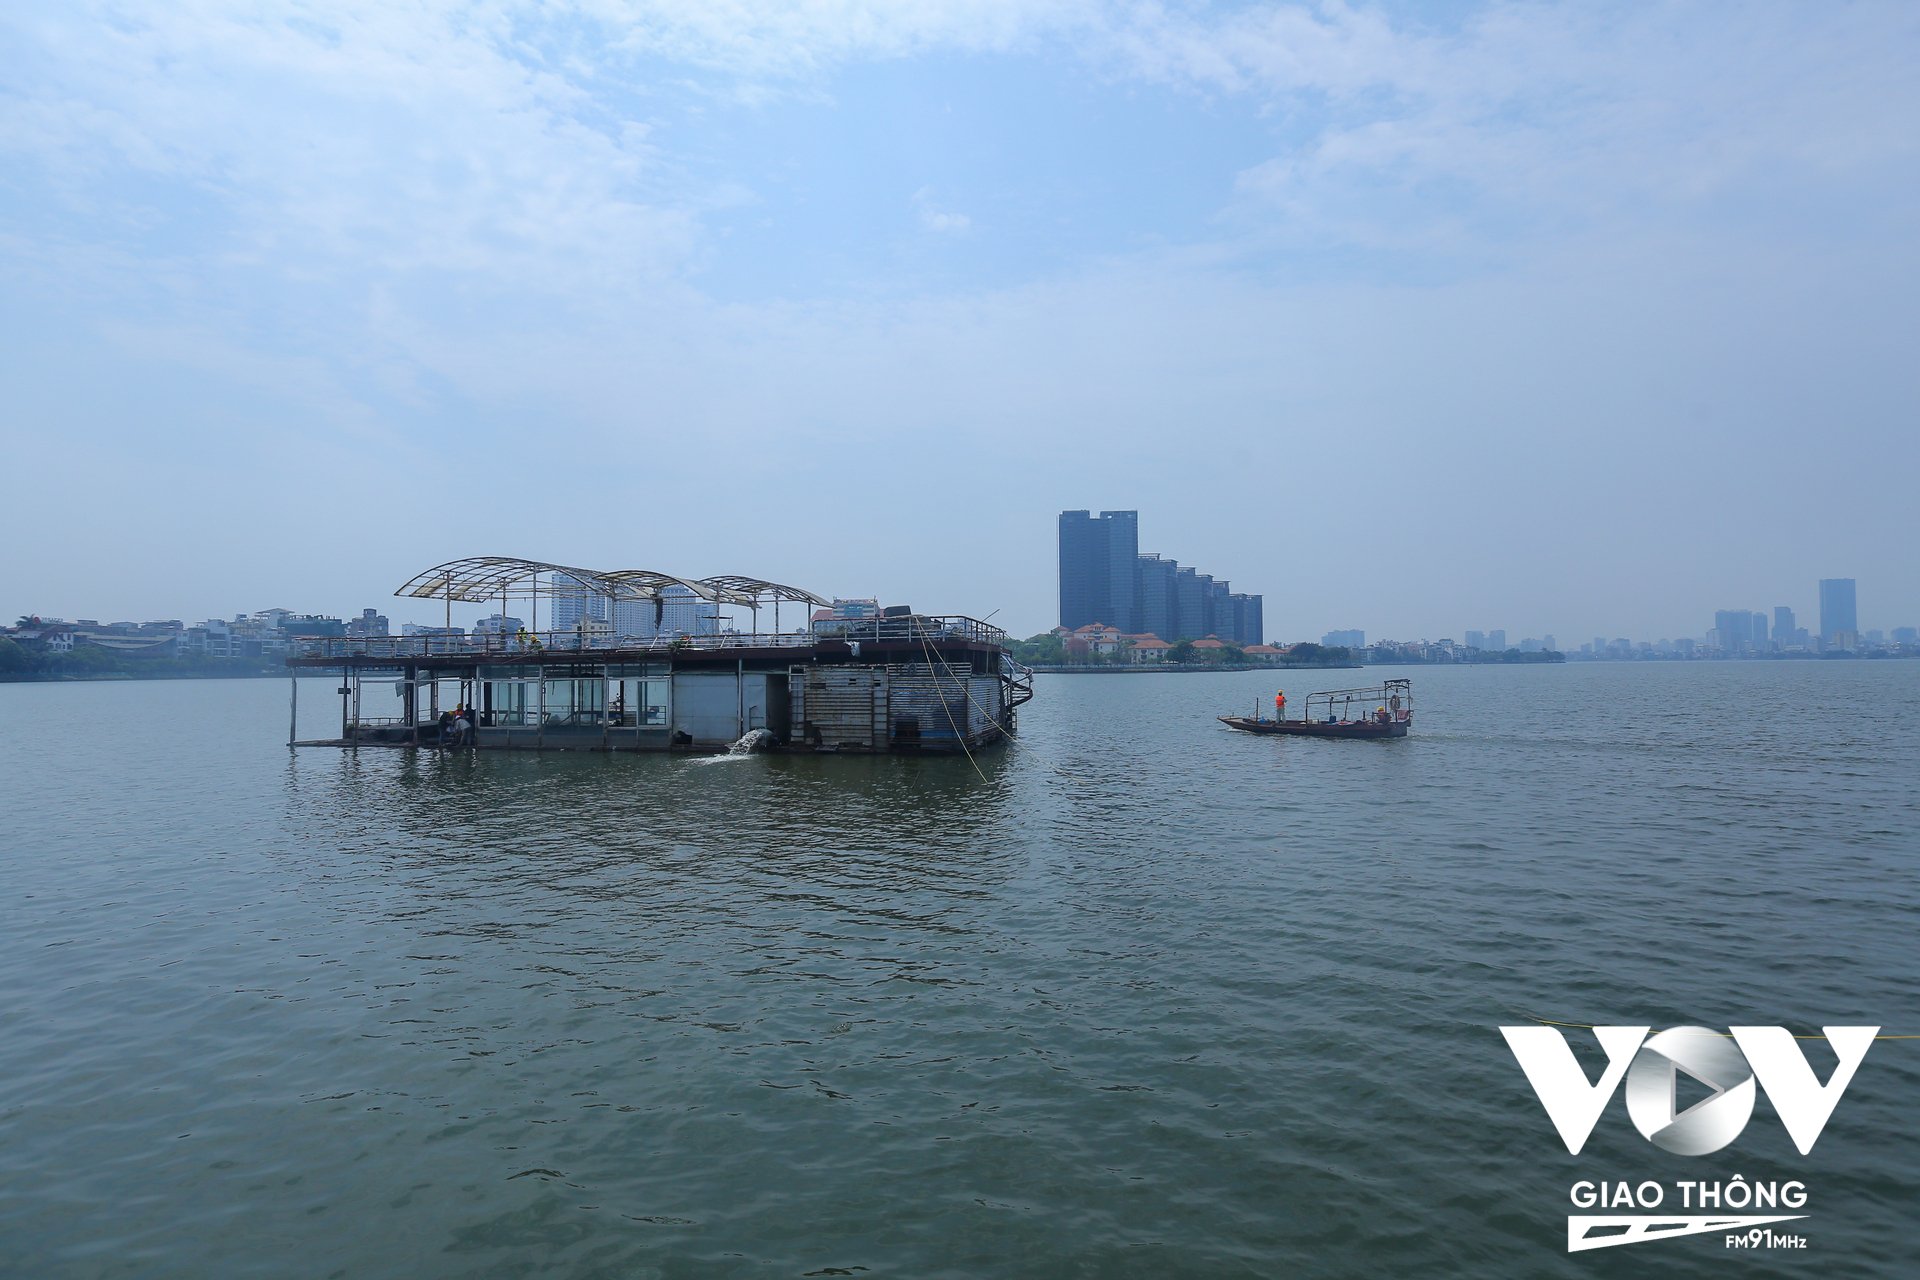 Đầu năm 2017, thành phố Hà Nội đã chỉ đạo chấm dứt toàn bộ hoạt động của các doanh nghiệp kinh doanh trong phạm vi quản lý Hồ Tây; xác định vị trí và di chuyển tàu, thuyền, phương tiện nổi về vị trí tập kết; xây dựng kế hoạch tháo dỡ, di dời triệt để các phương tiện ra khỏi Hồ Tây.